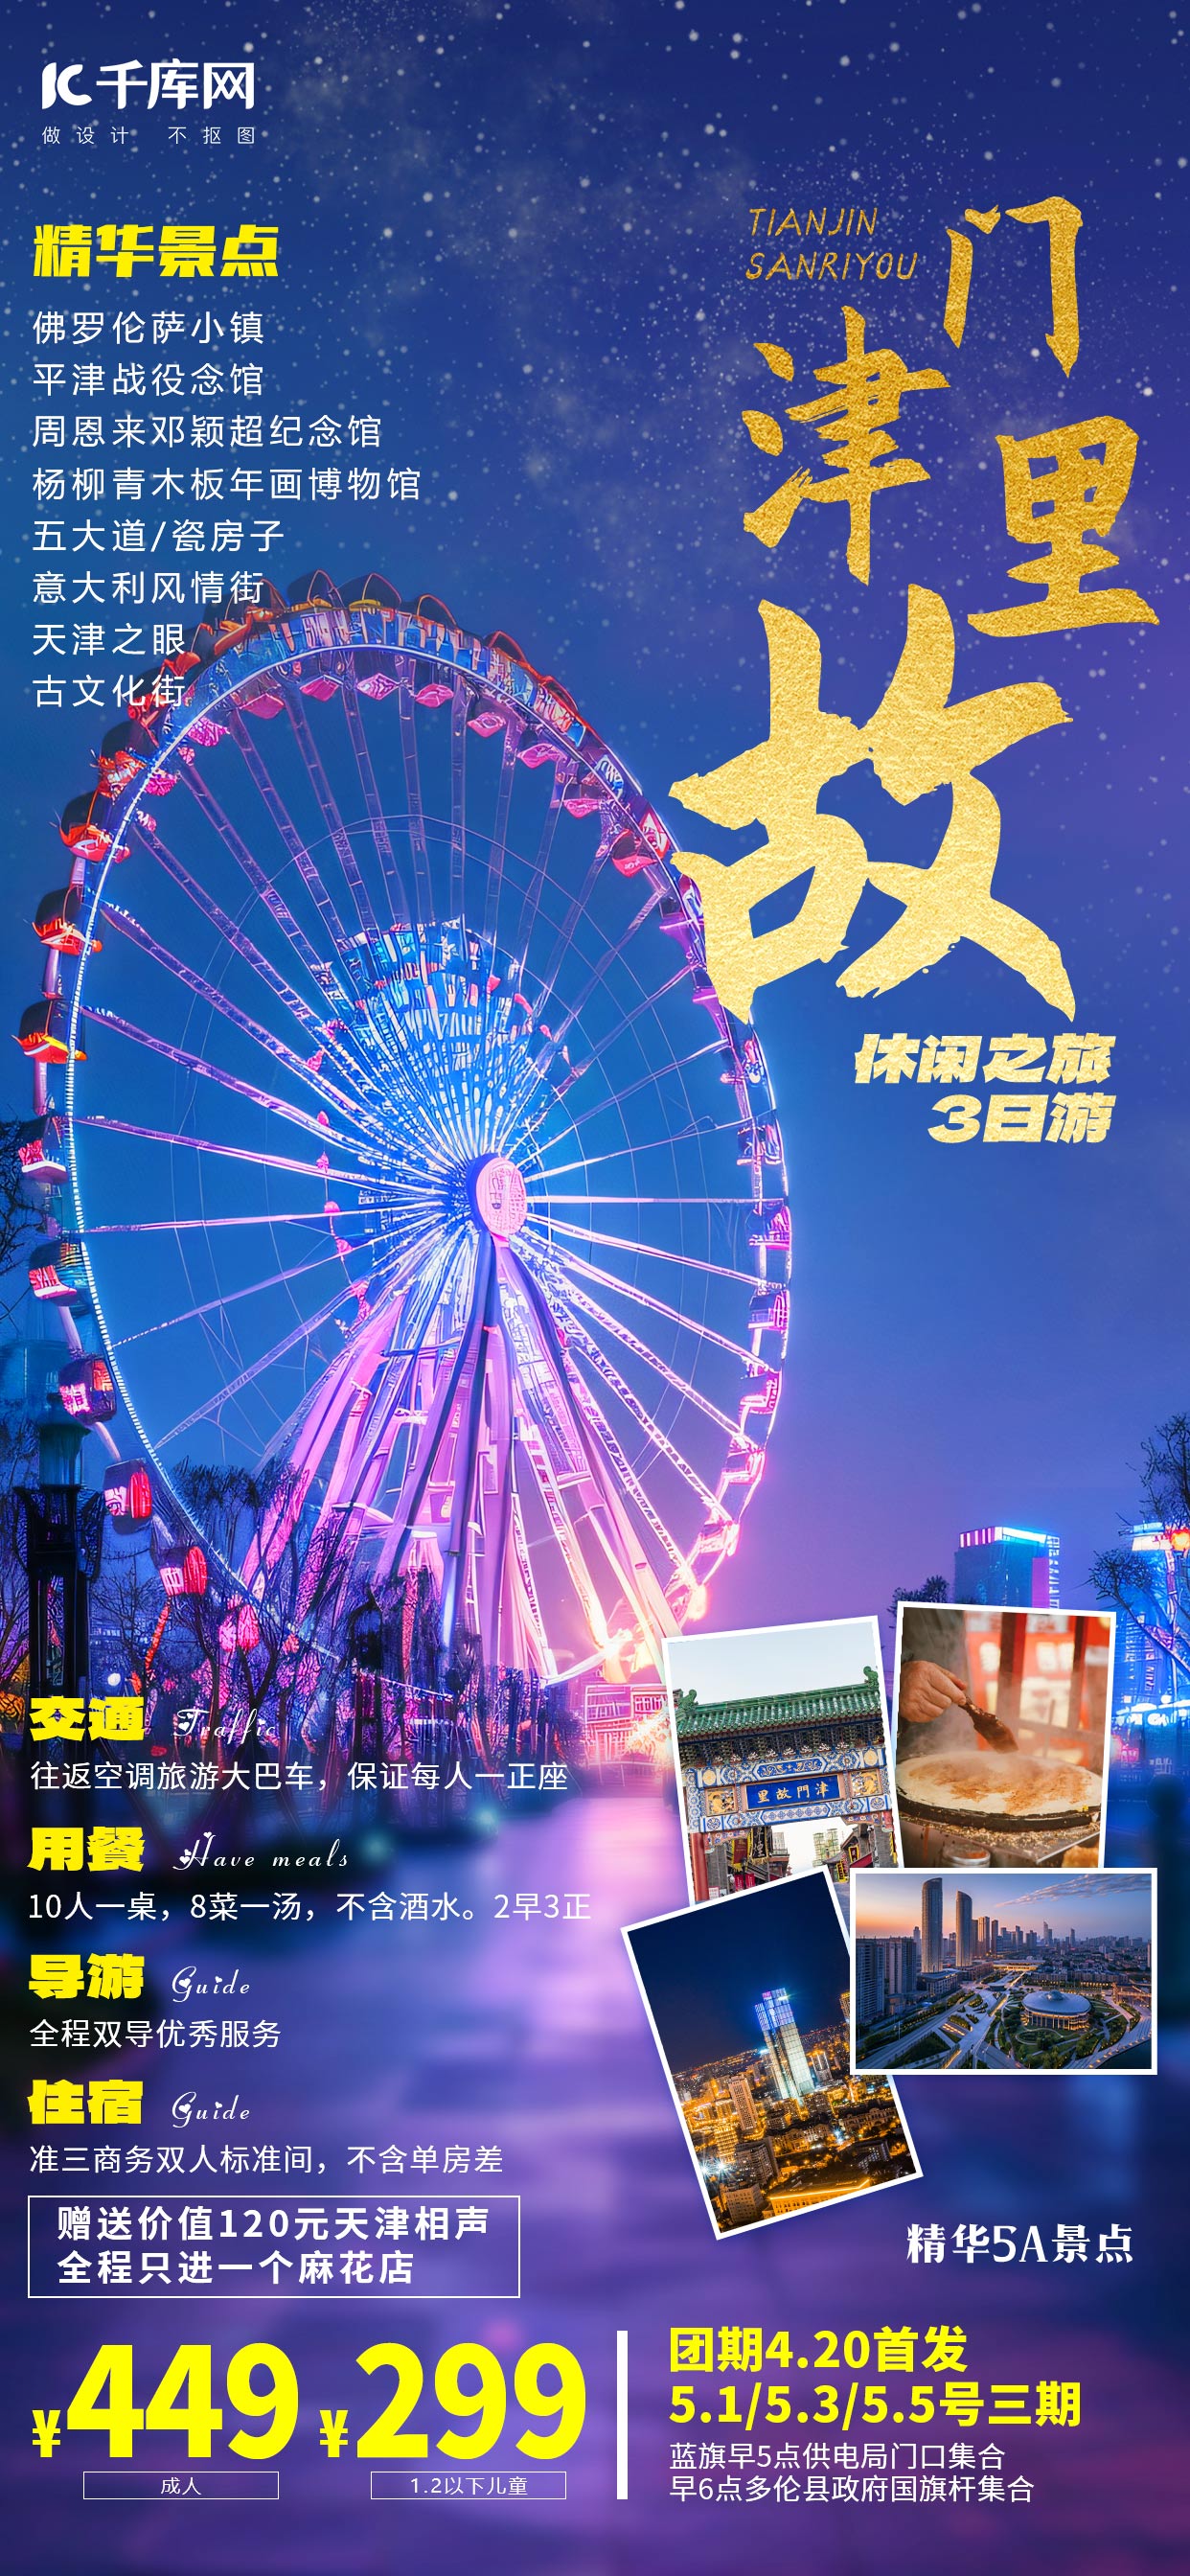 天津旅游摩天轮蓝色摄影图海报海报制作图片